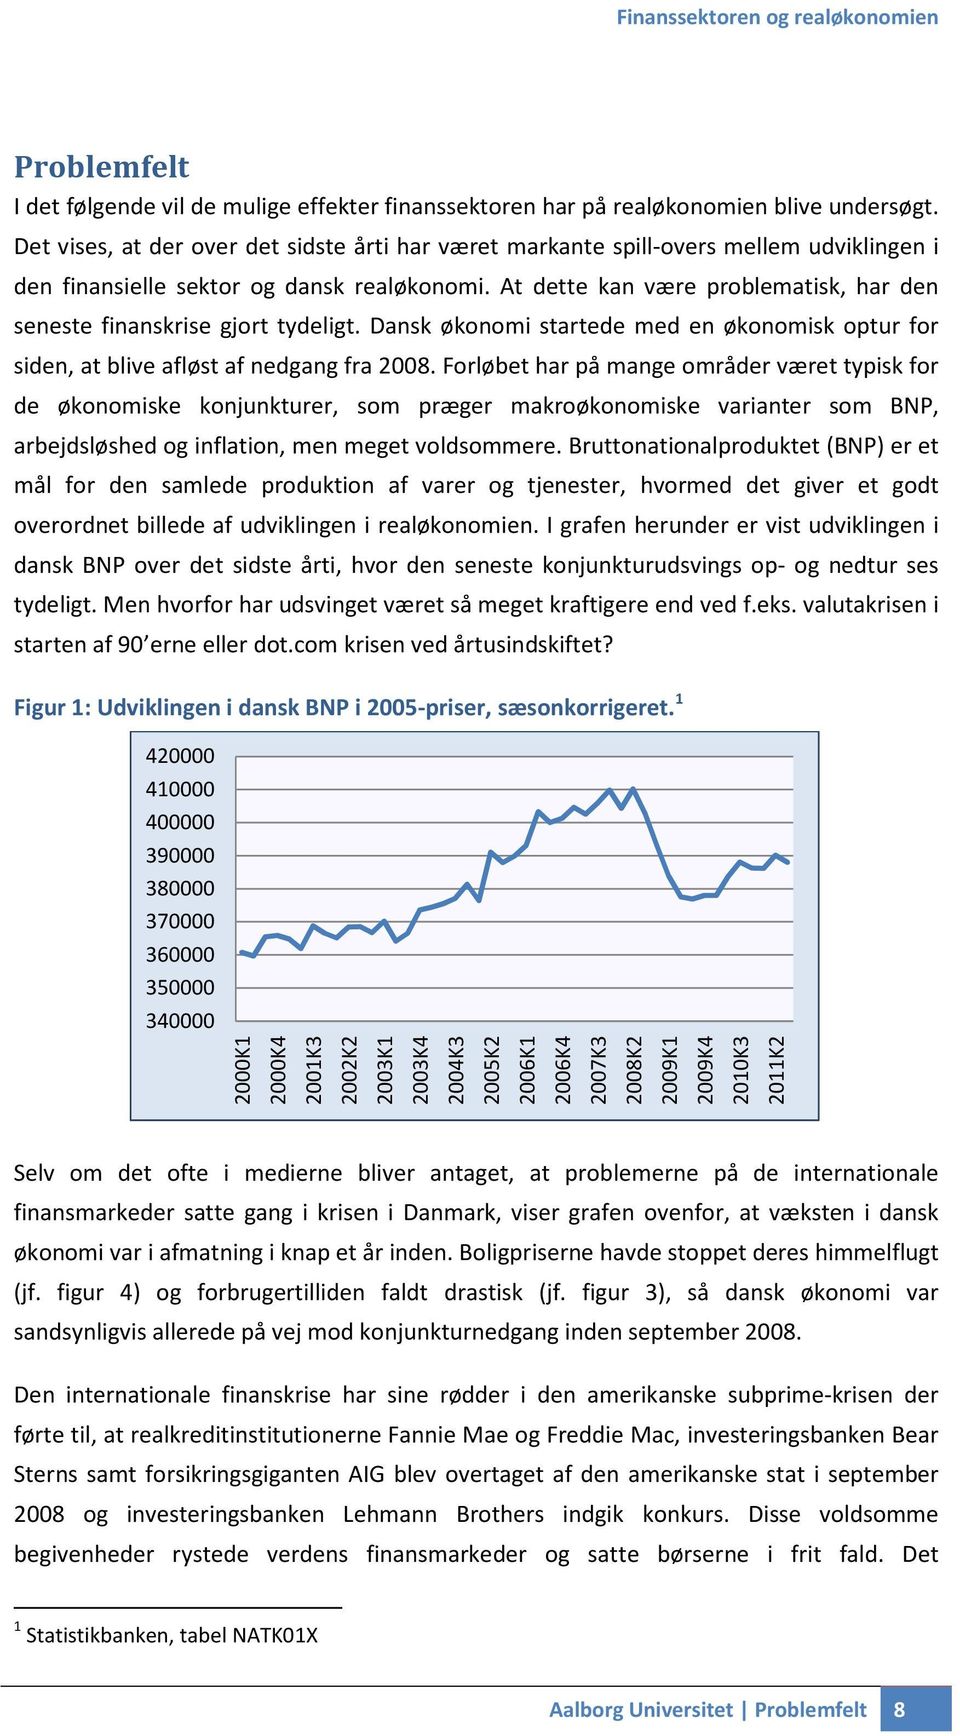 At dette kan være problematisk, har den seneste finanskrise gjort tydeligt. Dansk økonomi startede med en økonomisk optur for siden, at blive afløst af nedgang fra 2008.